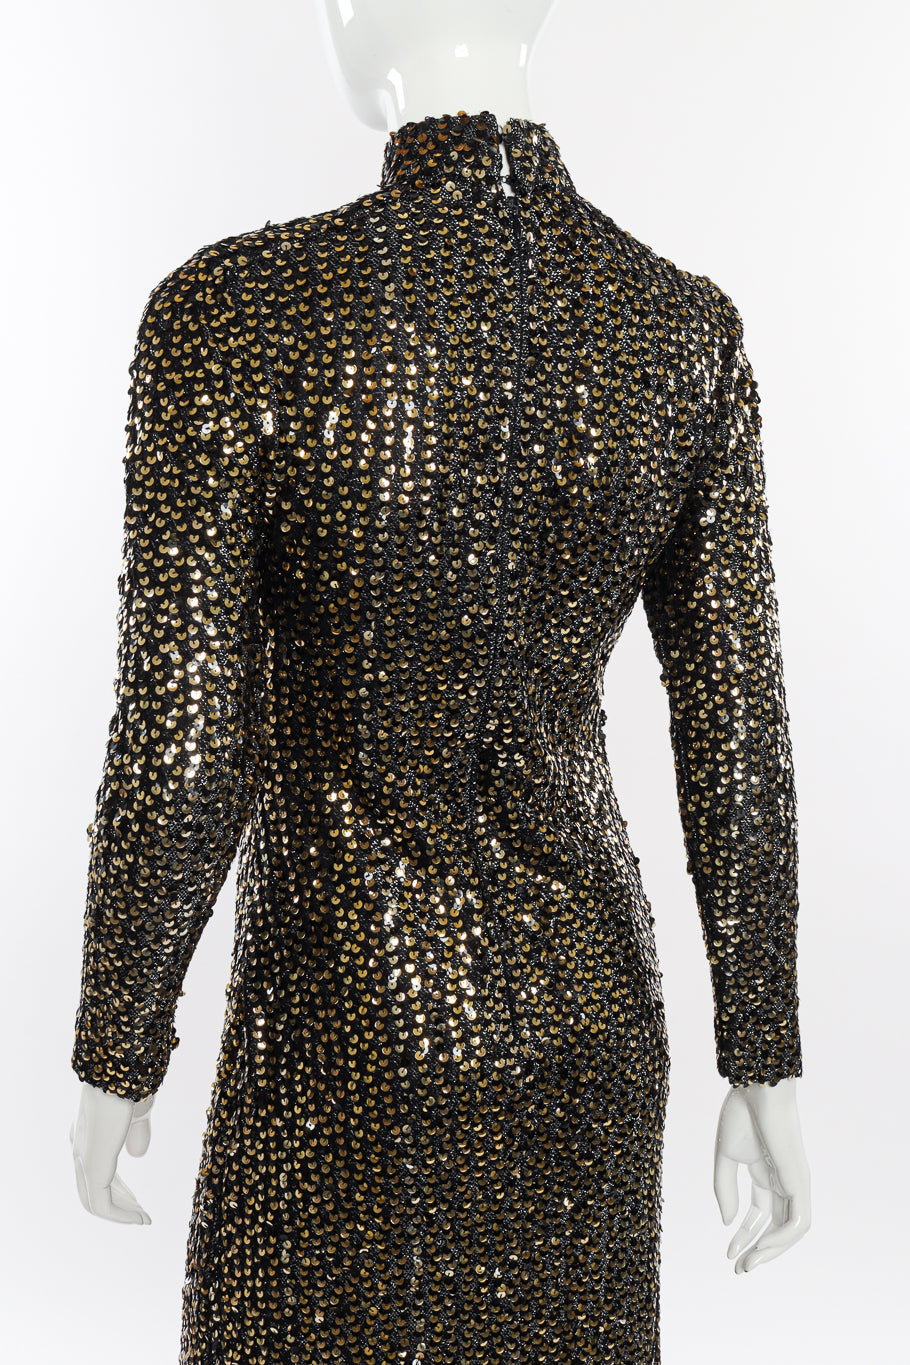 Vintage Anthony Muto Sequin Lamé Sheath Dress back on mannequin closeup @recessla